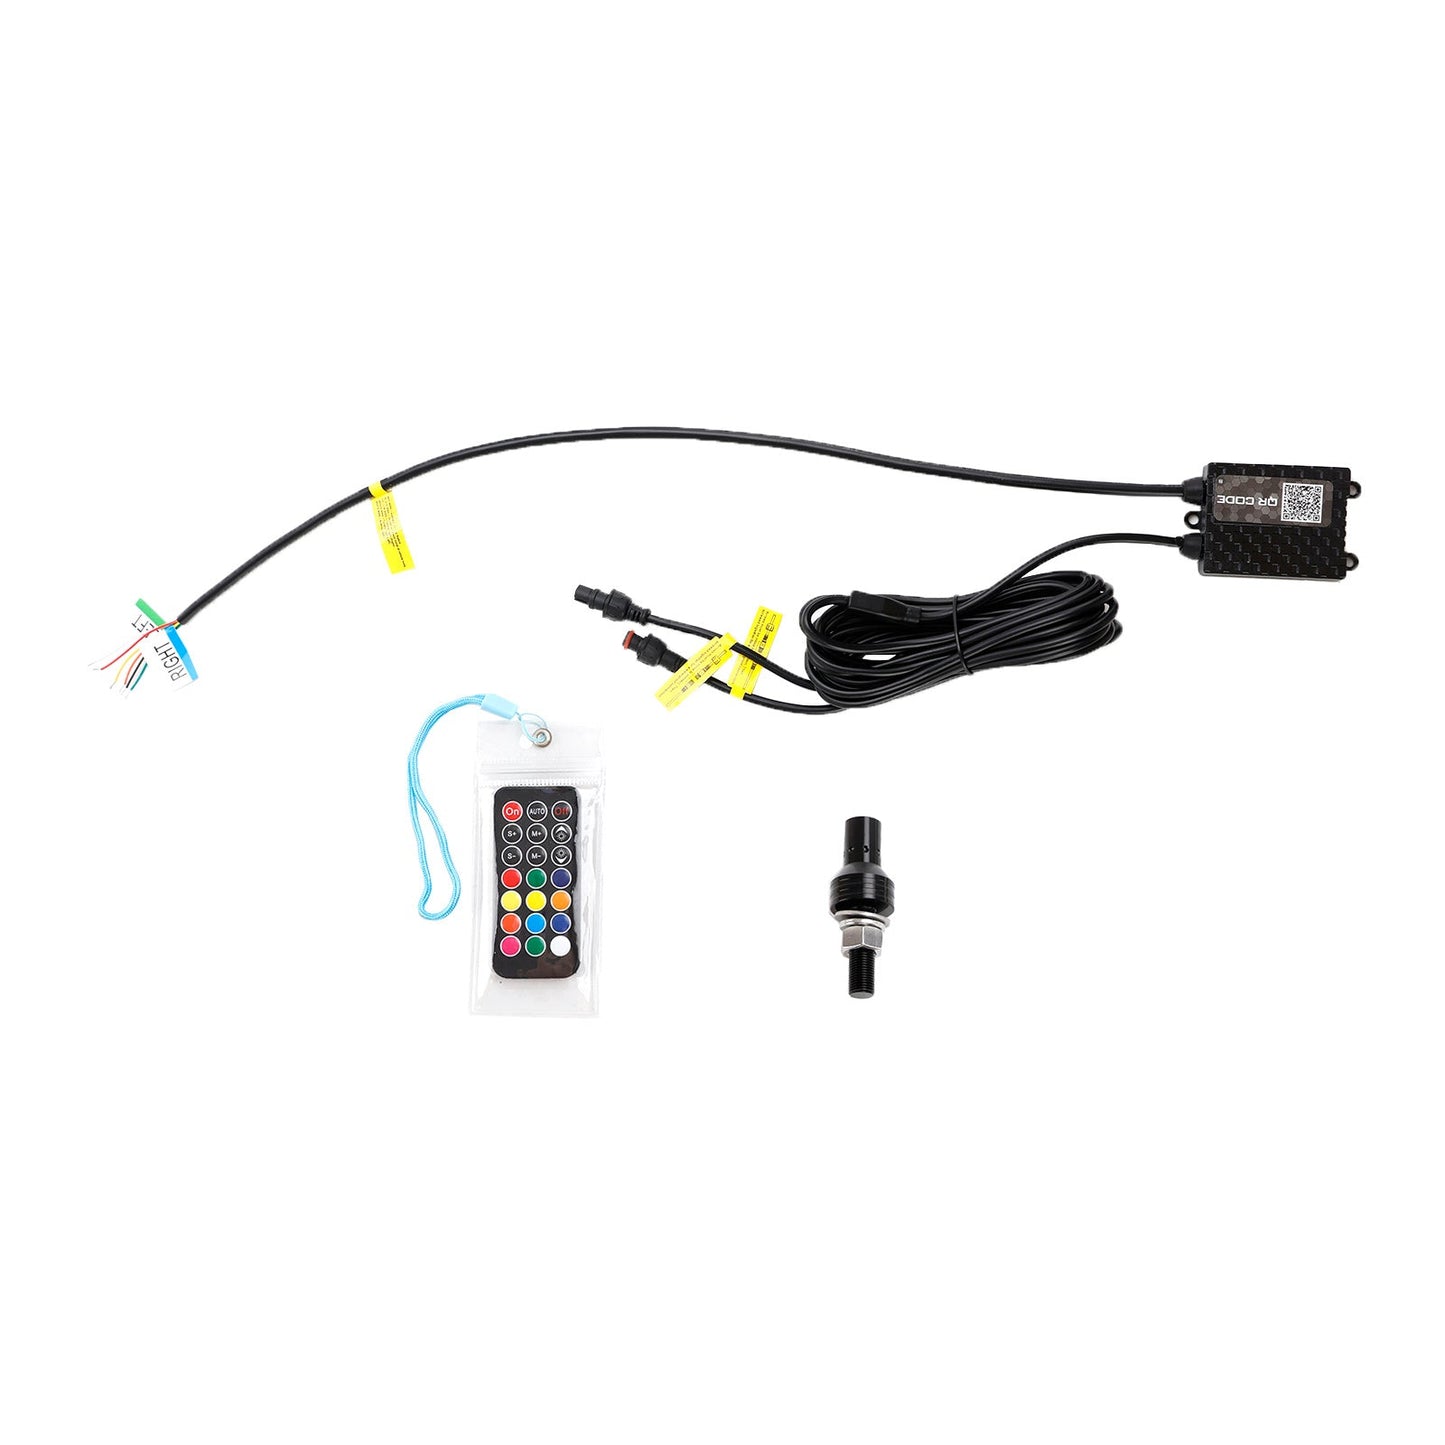 3ft RGB LED APP Whip Lights Antenna W/ Flag Remote Control For Polaris UTV ATV